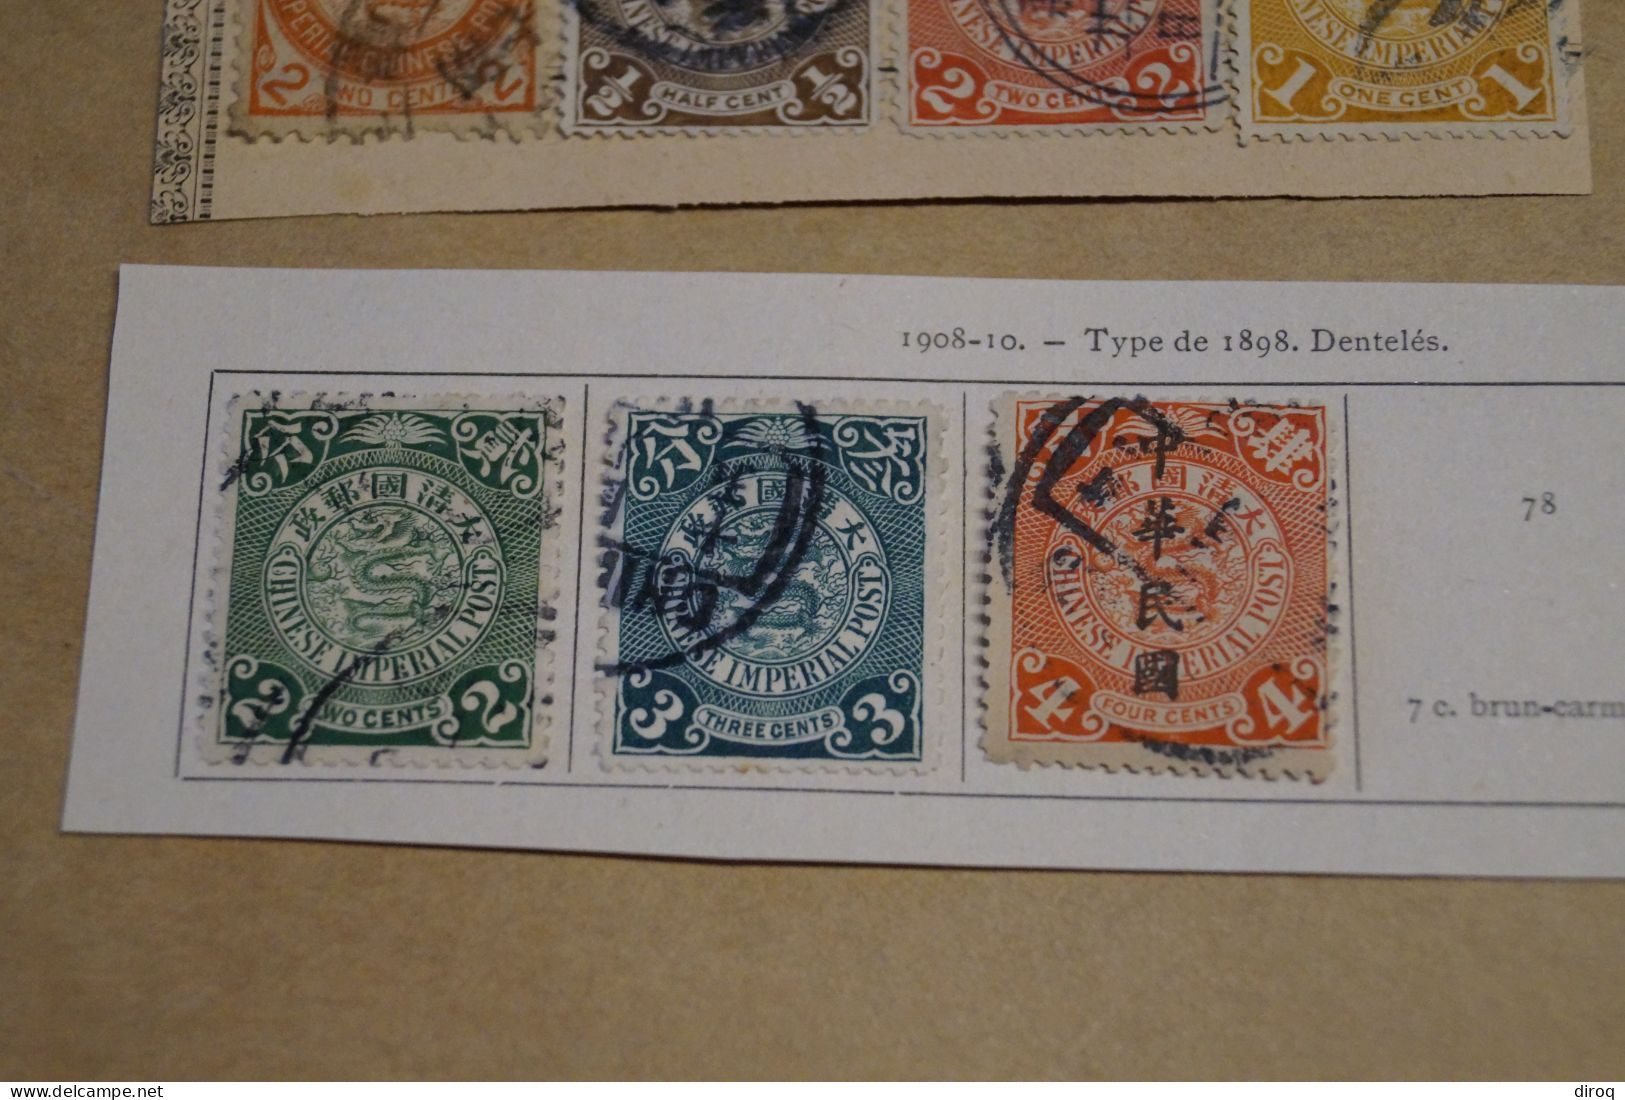 Chine,Chines,lot de 30 timbres oblitérés,1898 - 1910,certains avec surcharges, pour collection,collector